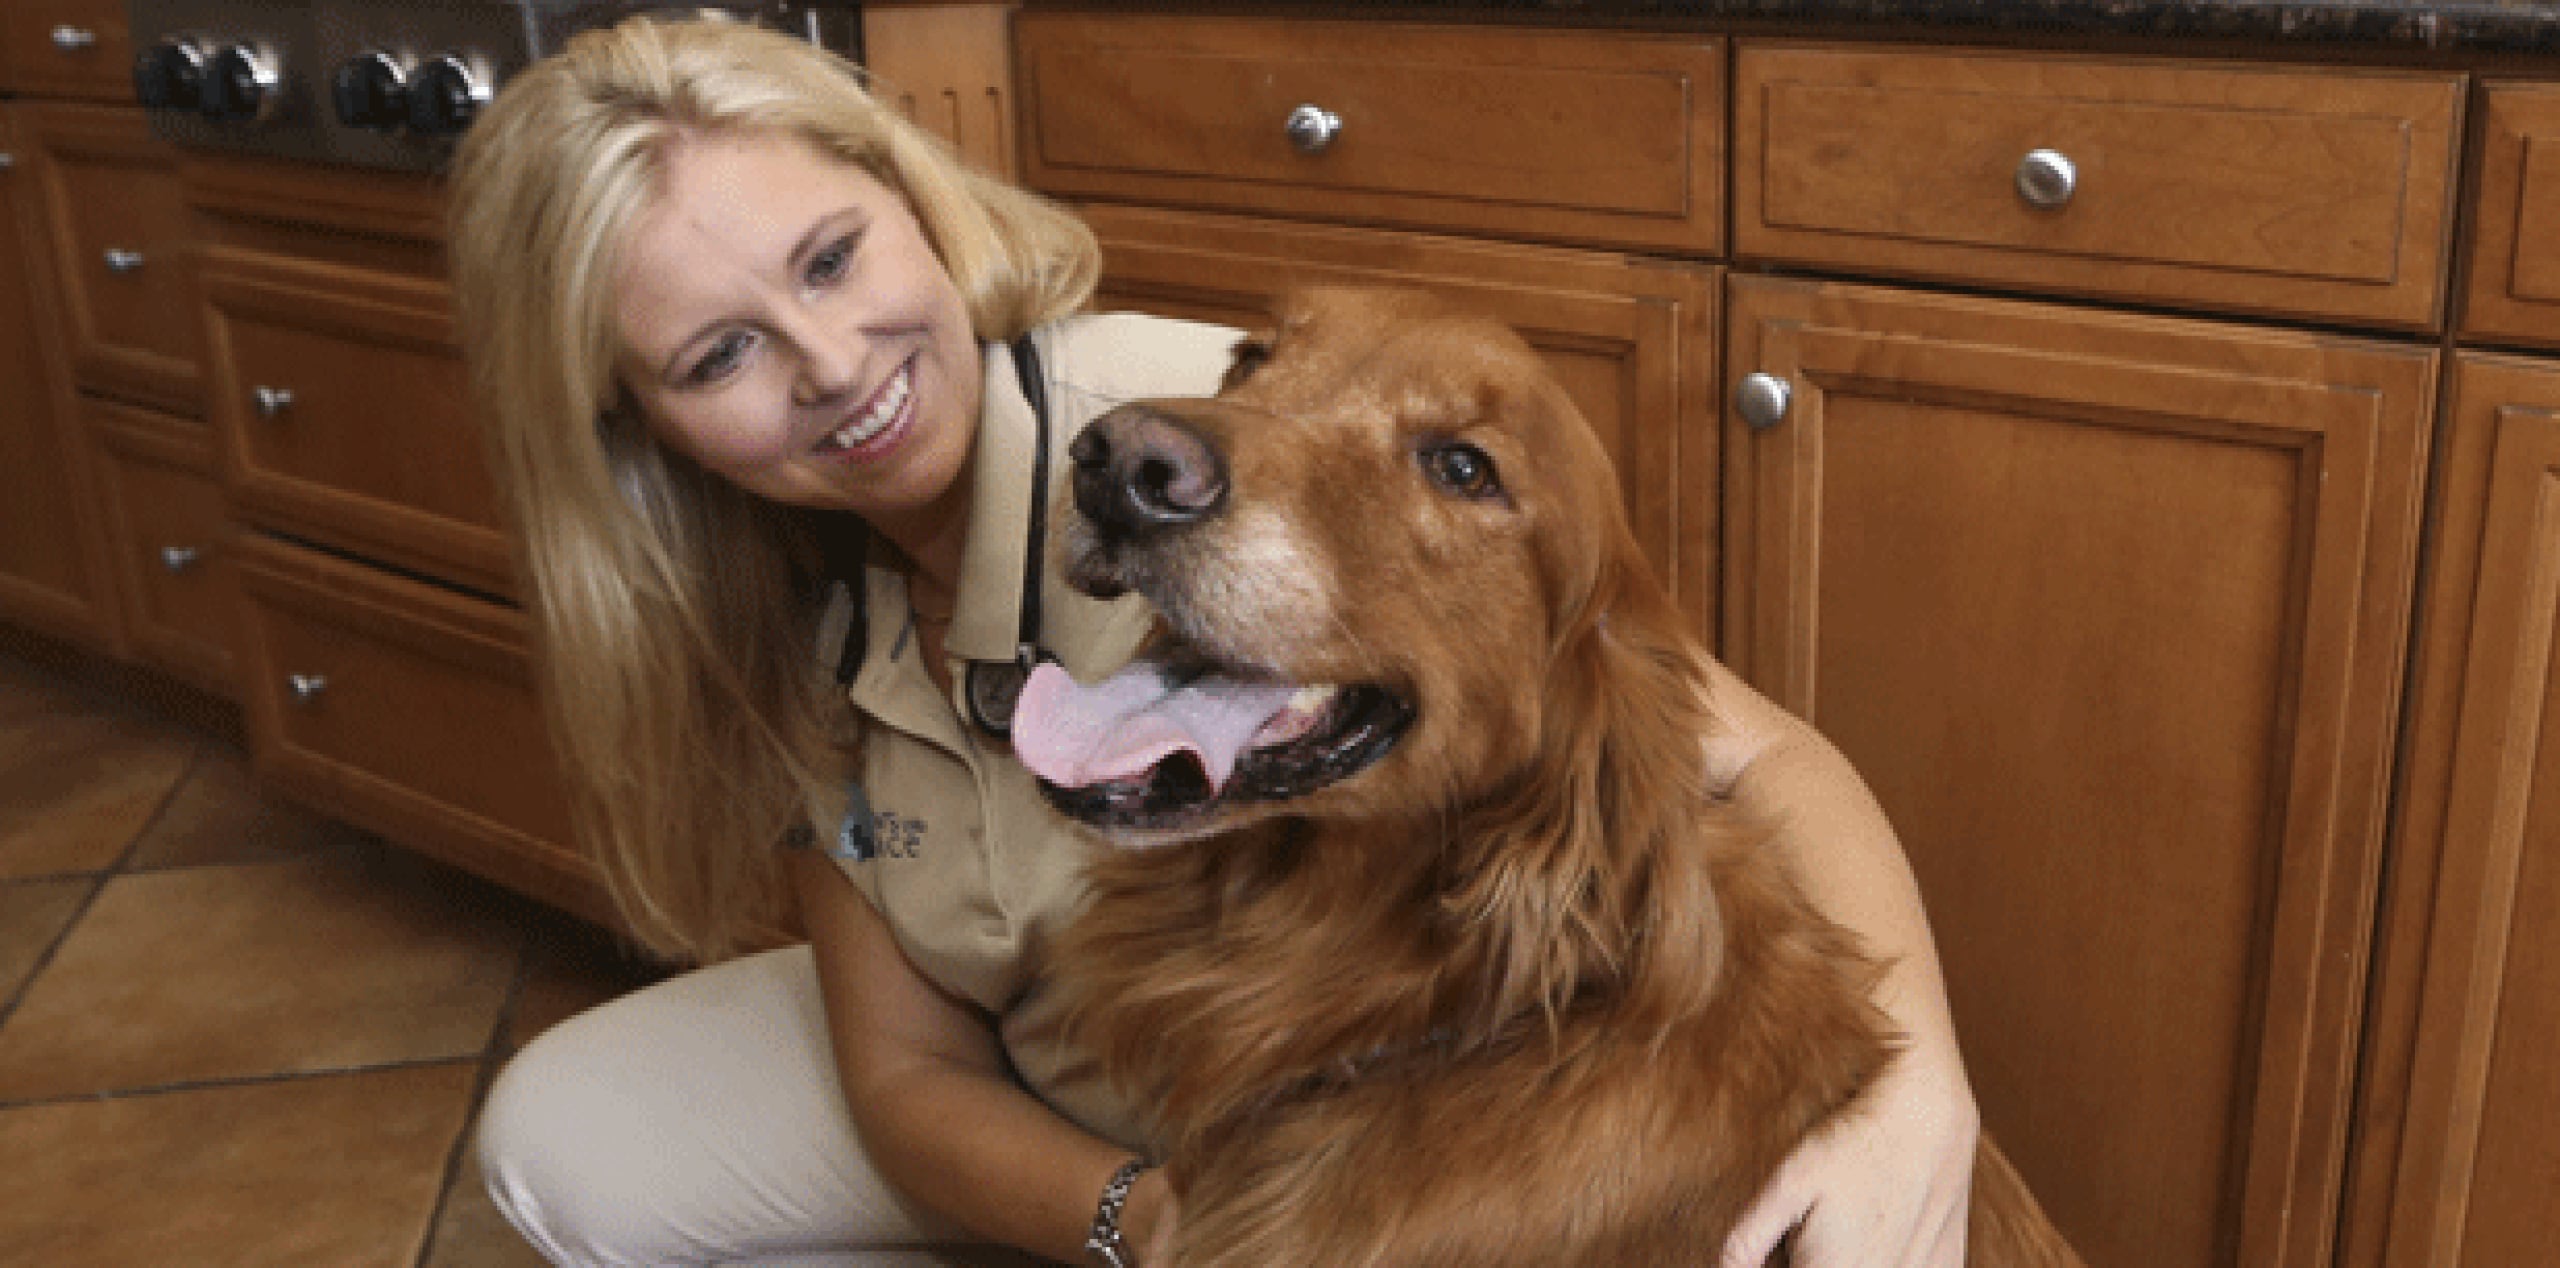 Como veterinaria de un hospicio, Jessica Vogelsang sabe cuánto pueden significar las mascotas. (AP Photo/Lenny Ignelzi)
